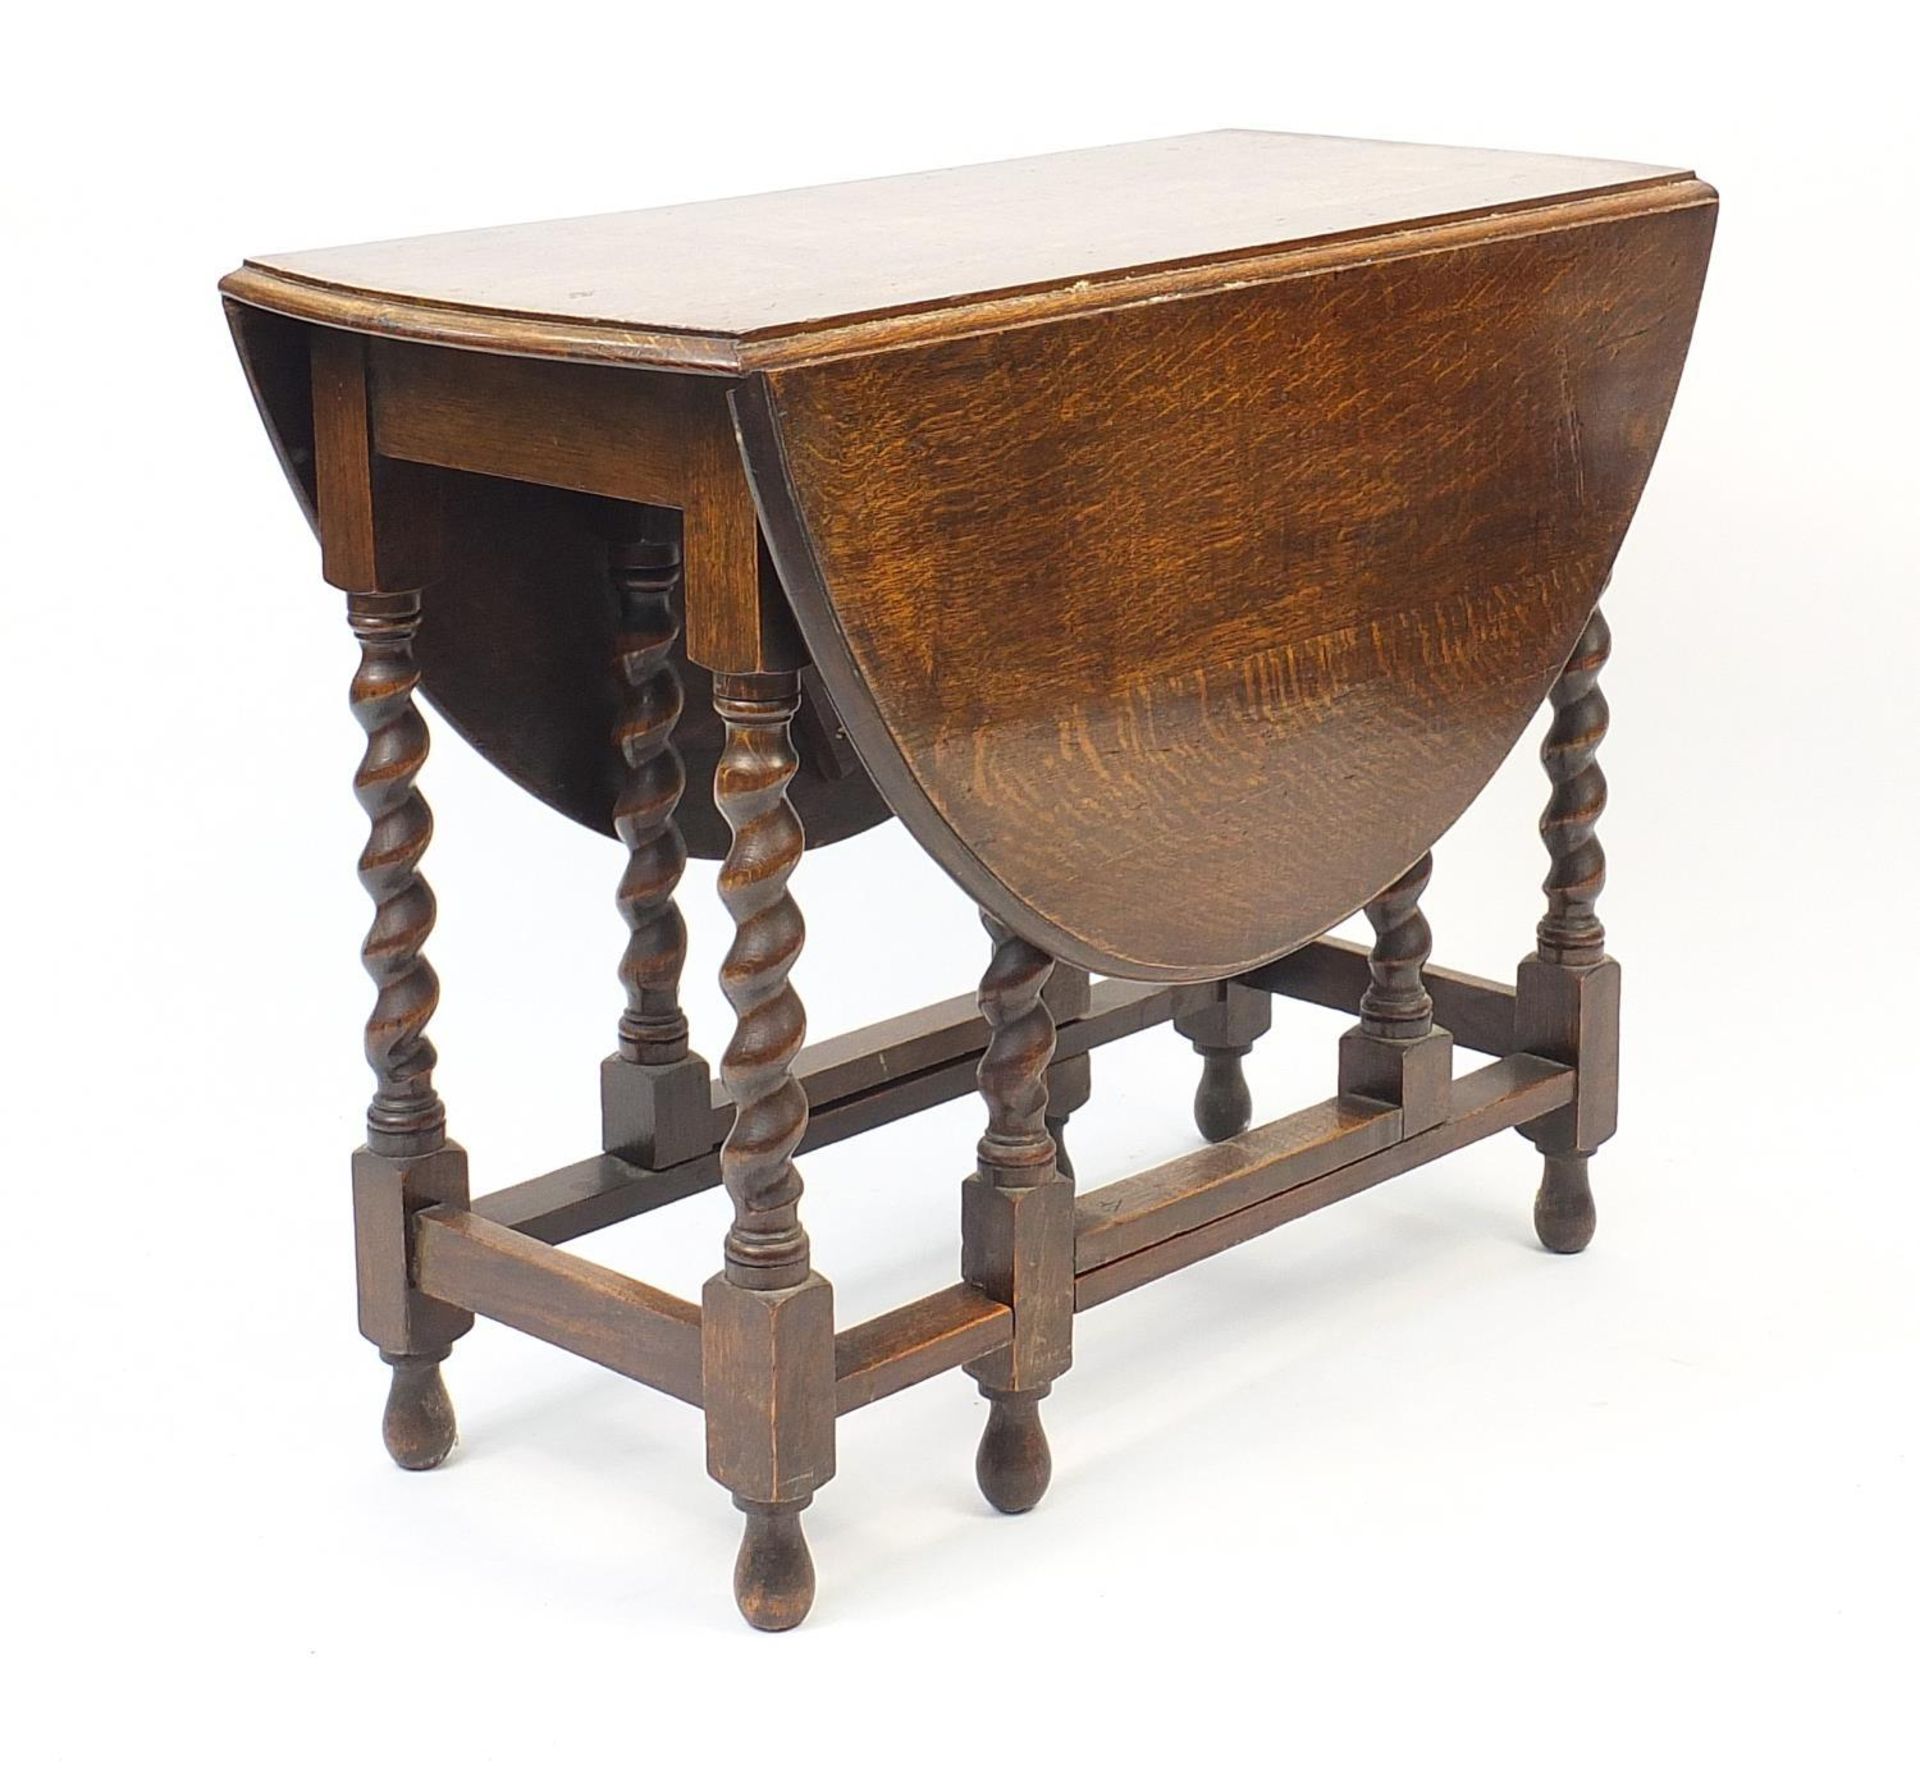 Oval oak gate leg table with barley twist legs, 73cm H x x 92cm W x 42cm D when closed :